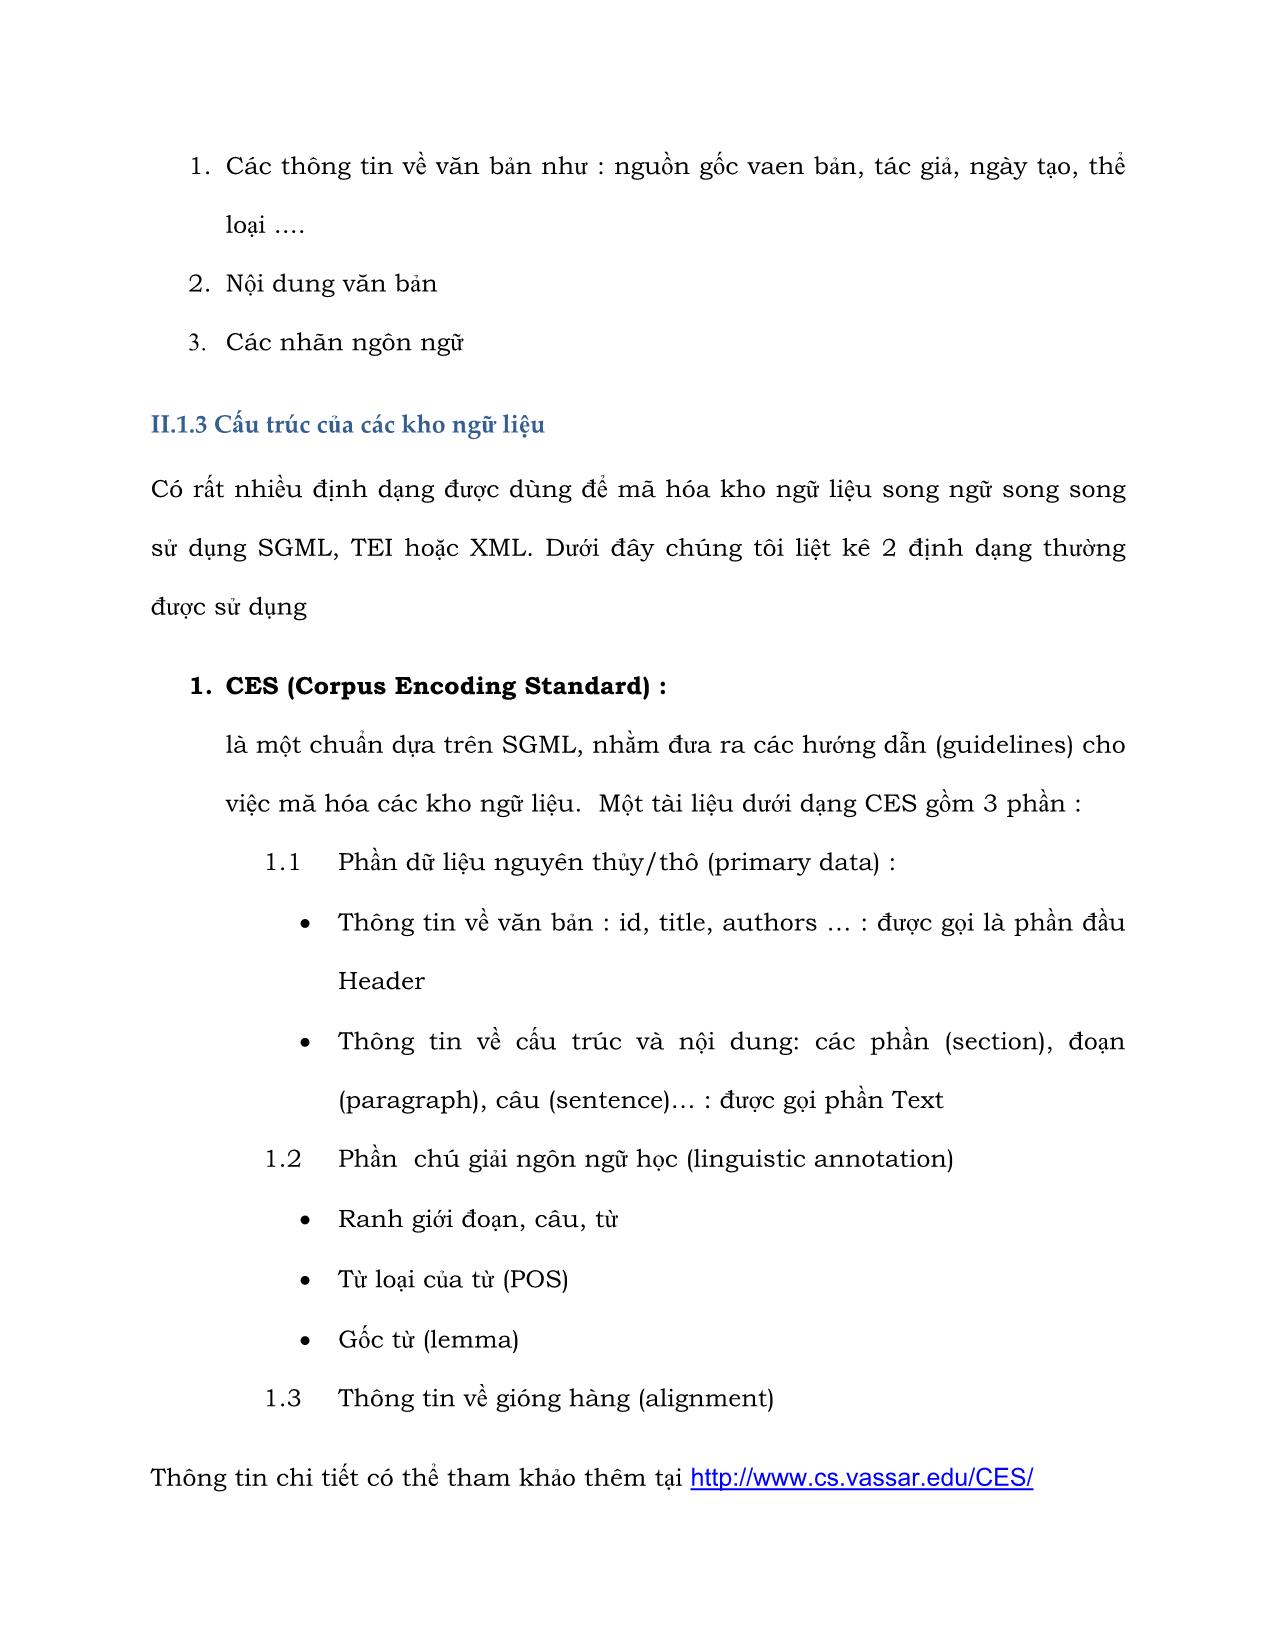 Báo cáo kỹ thuật Xây dựng kho ngữ liệu song ngữ Anh - Việt trang 10